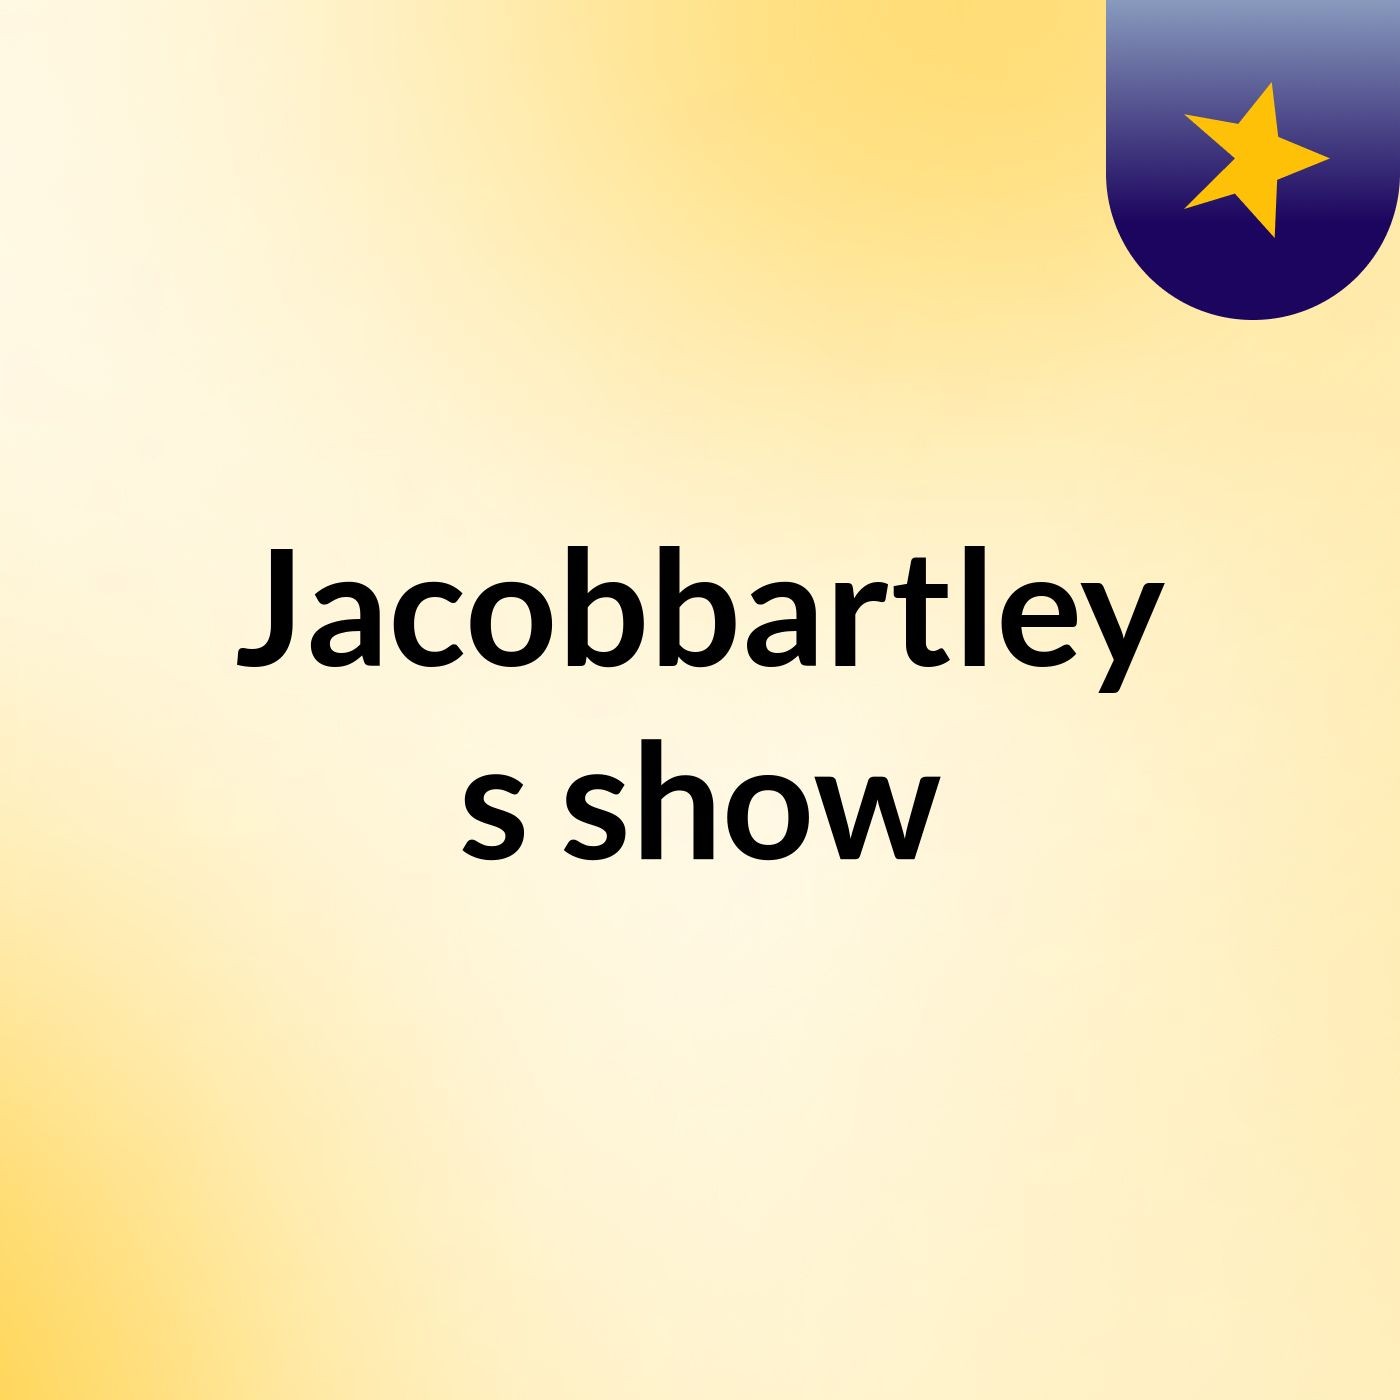 Episode 13 - Jacobbartley's show